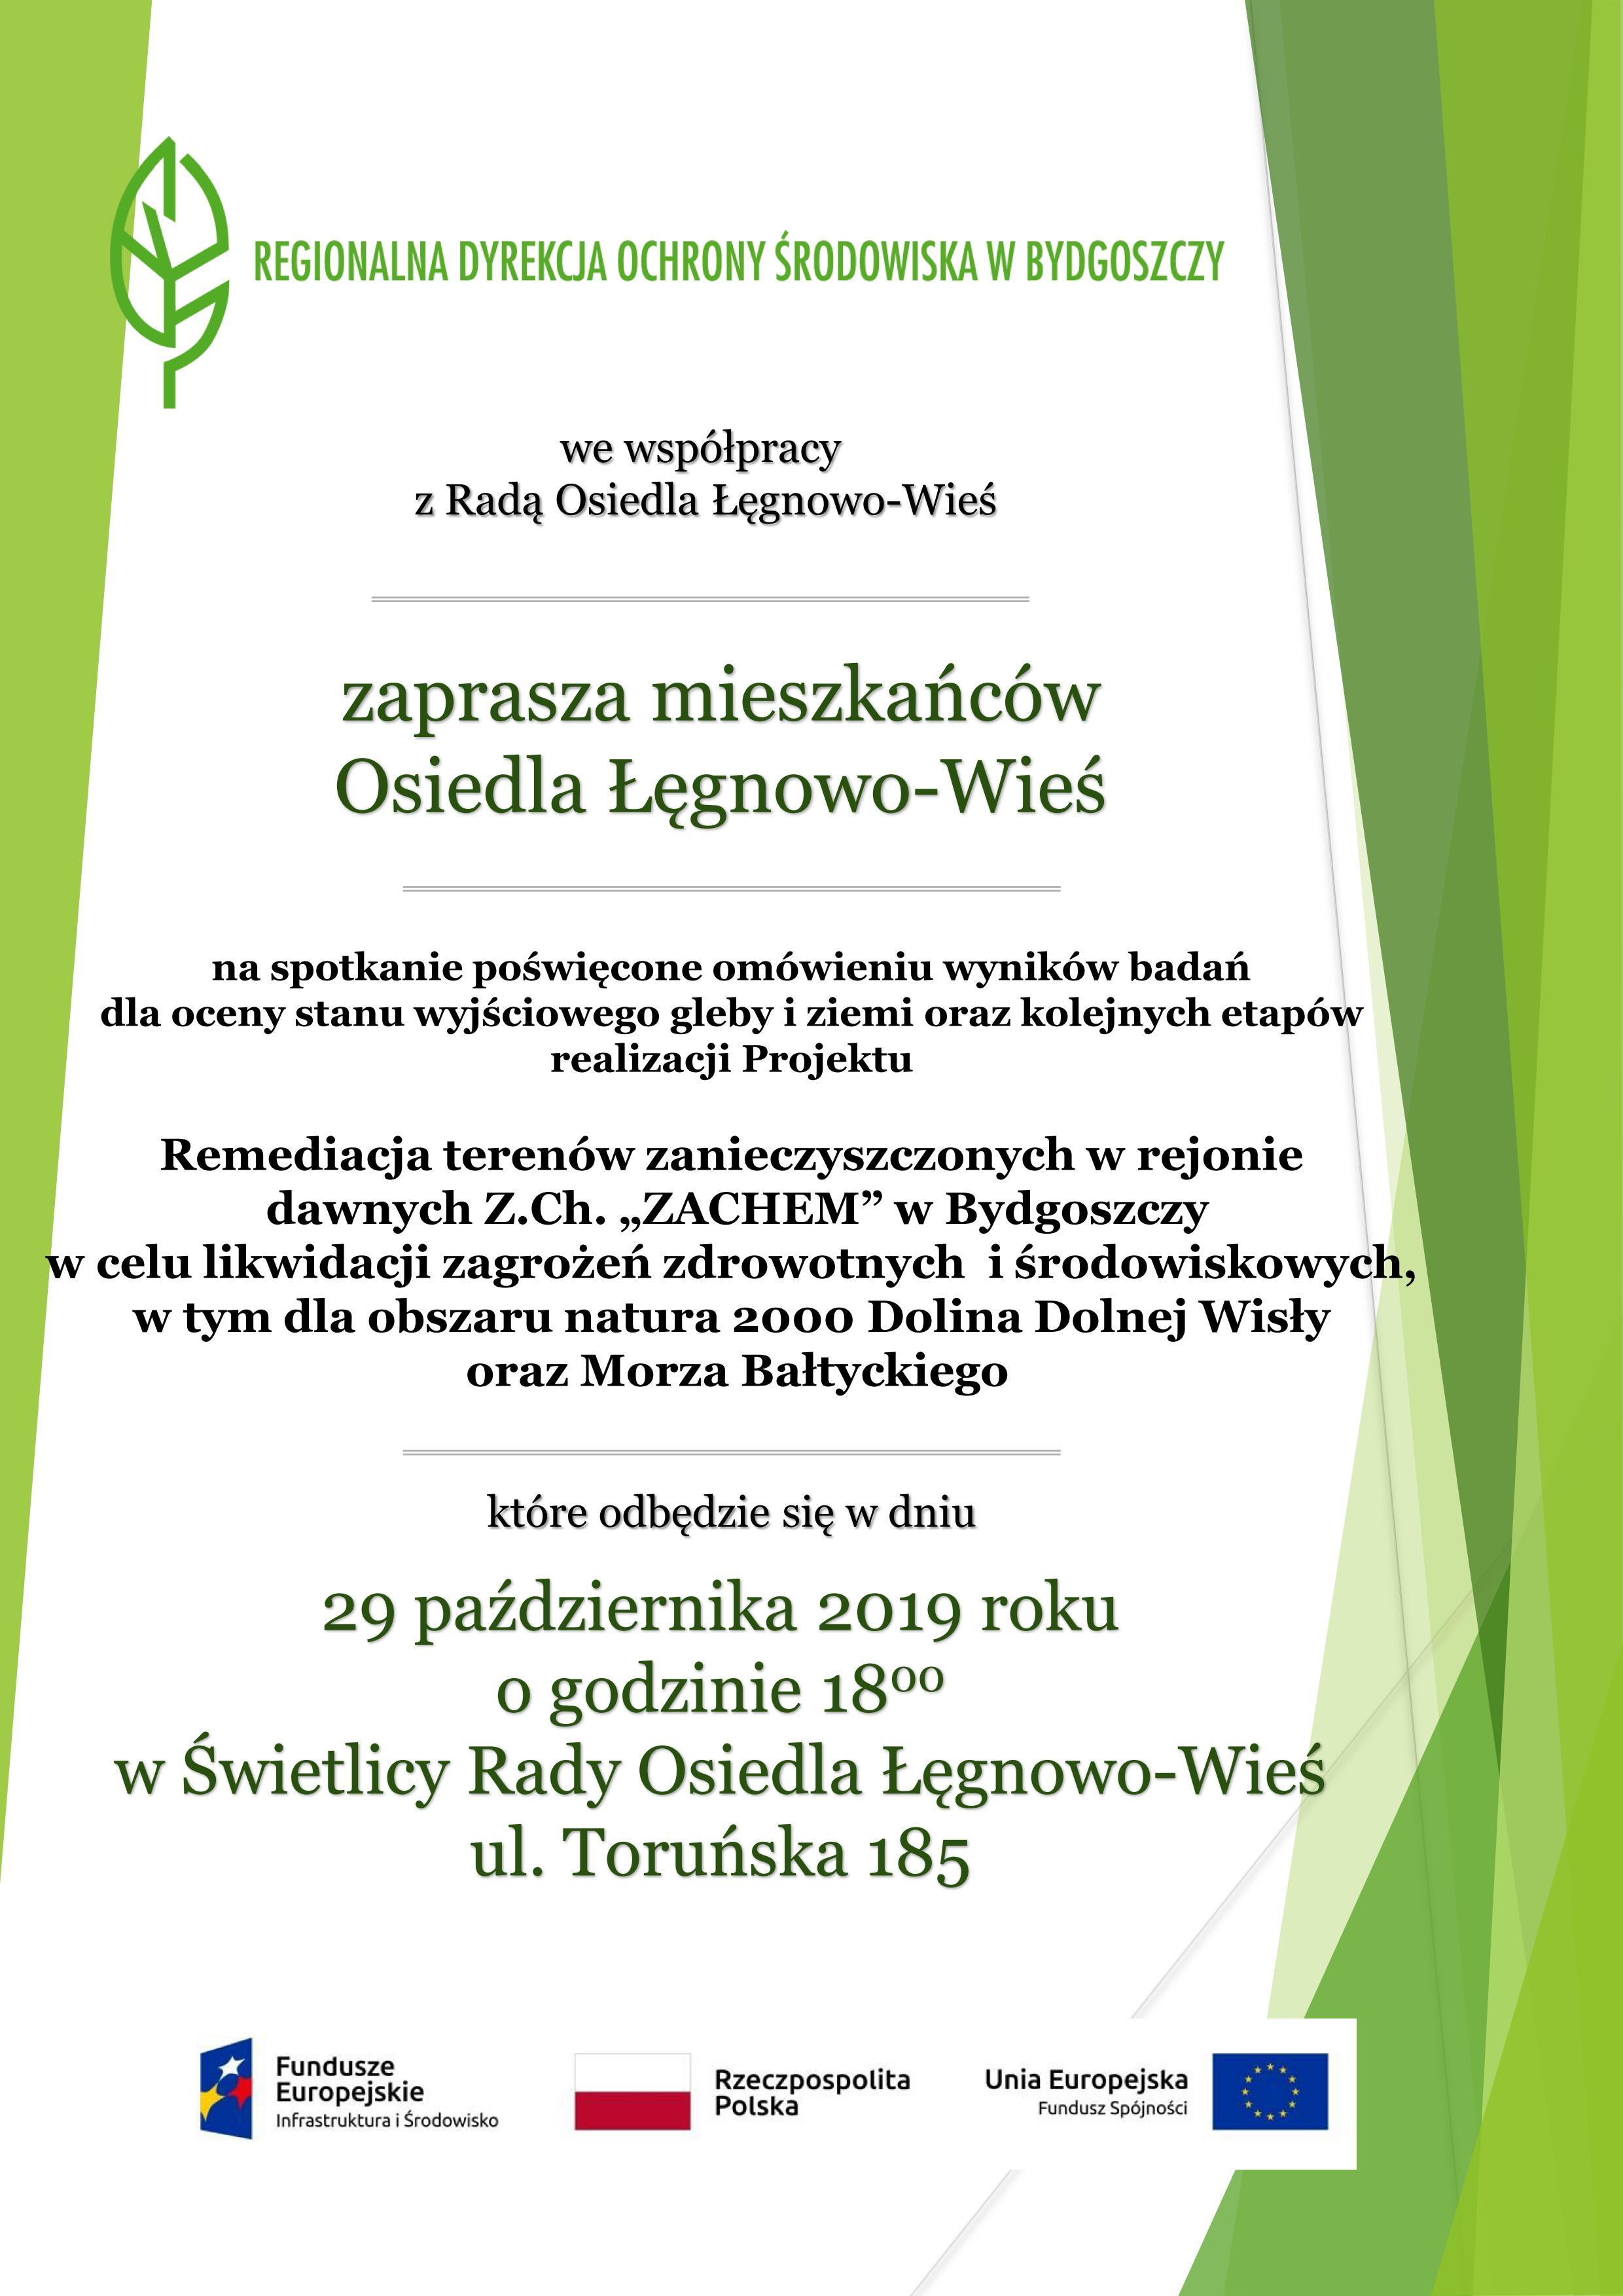 Plakat promujący spotkanie w dniu 29 października 2019 roku w Świetlicy Rady Osiedla Łęgnowo-Wieś. Tło jest zielone, na dole widnieją logotypy projektu